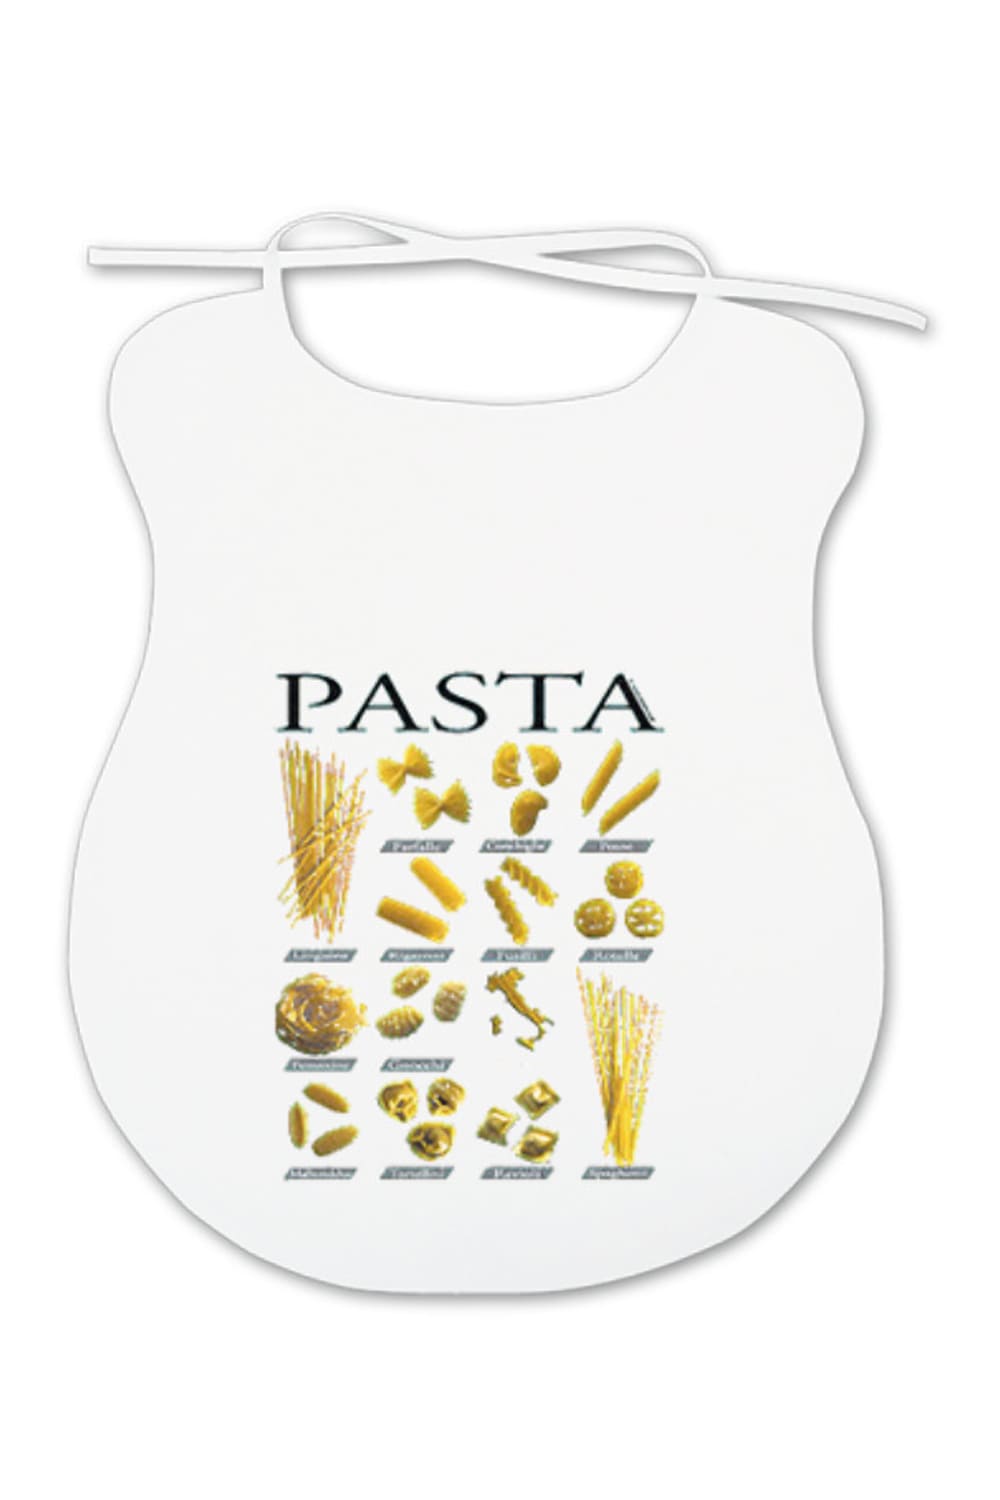 Ein lustiges Geschenk fuer alle Erwachsene, die mehr oder weniger beim Essen kleckern. Auf dem Spaghettilatz sind diverse Teigwaren abgebildet.  Der Pasta Erwachsenenlatz ist aus Baumwolle.